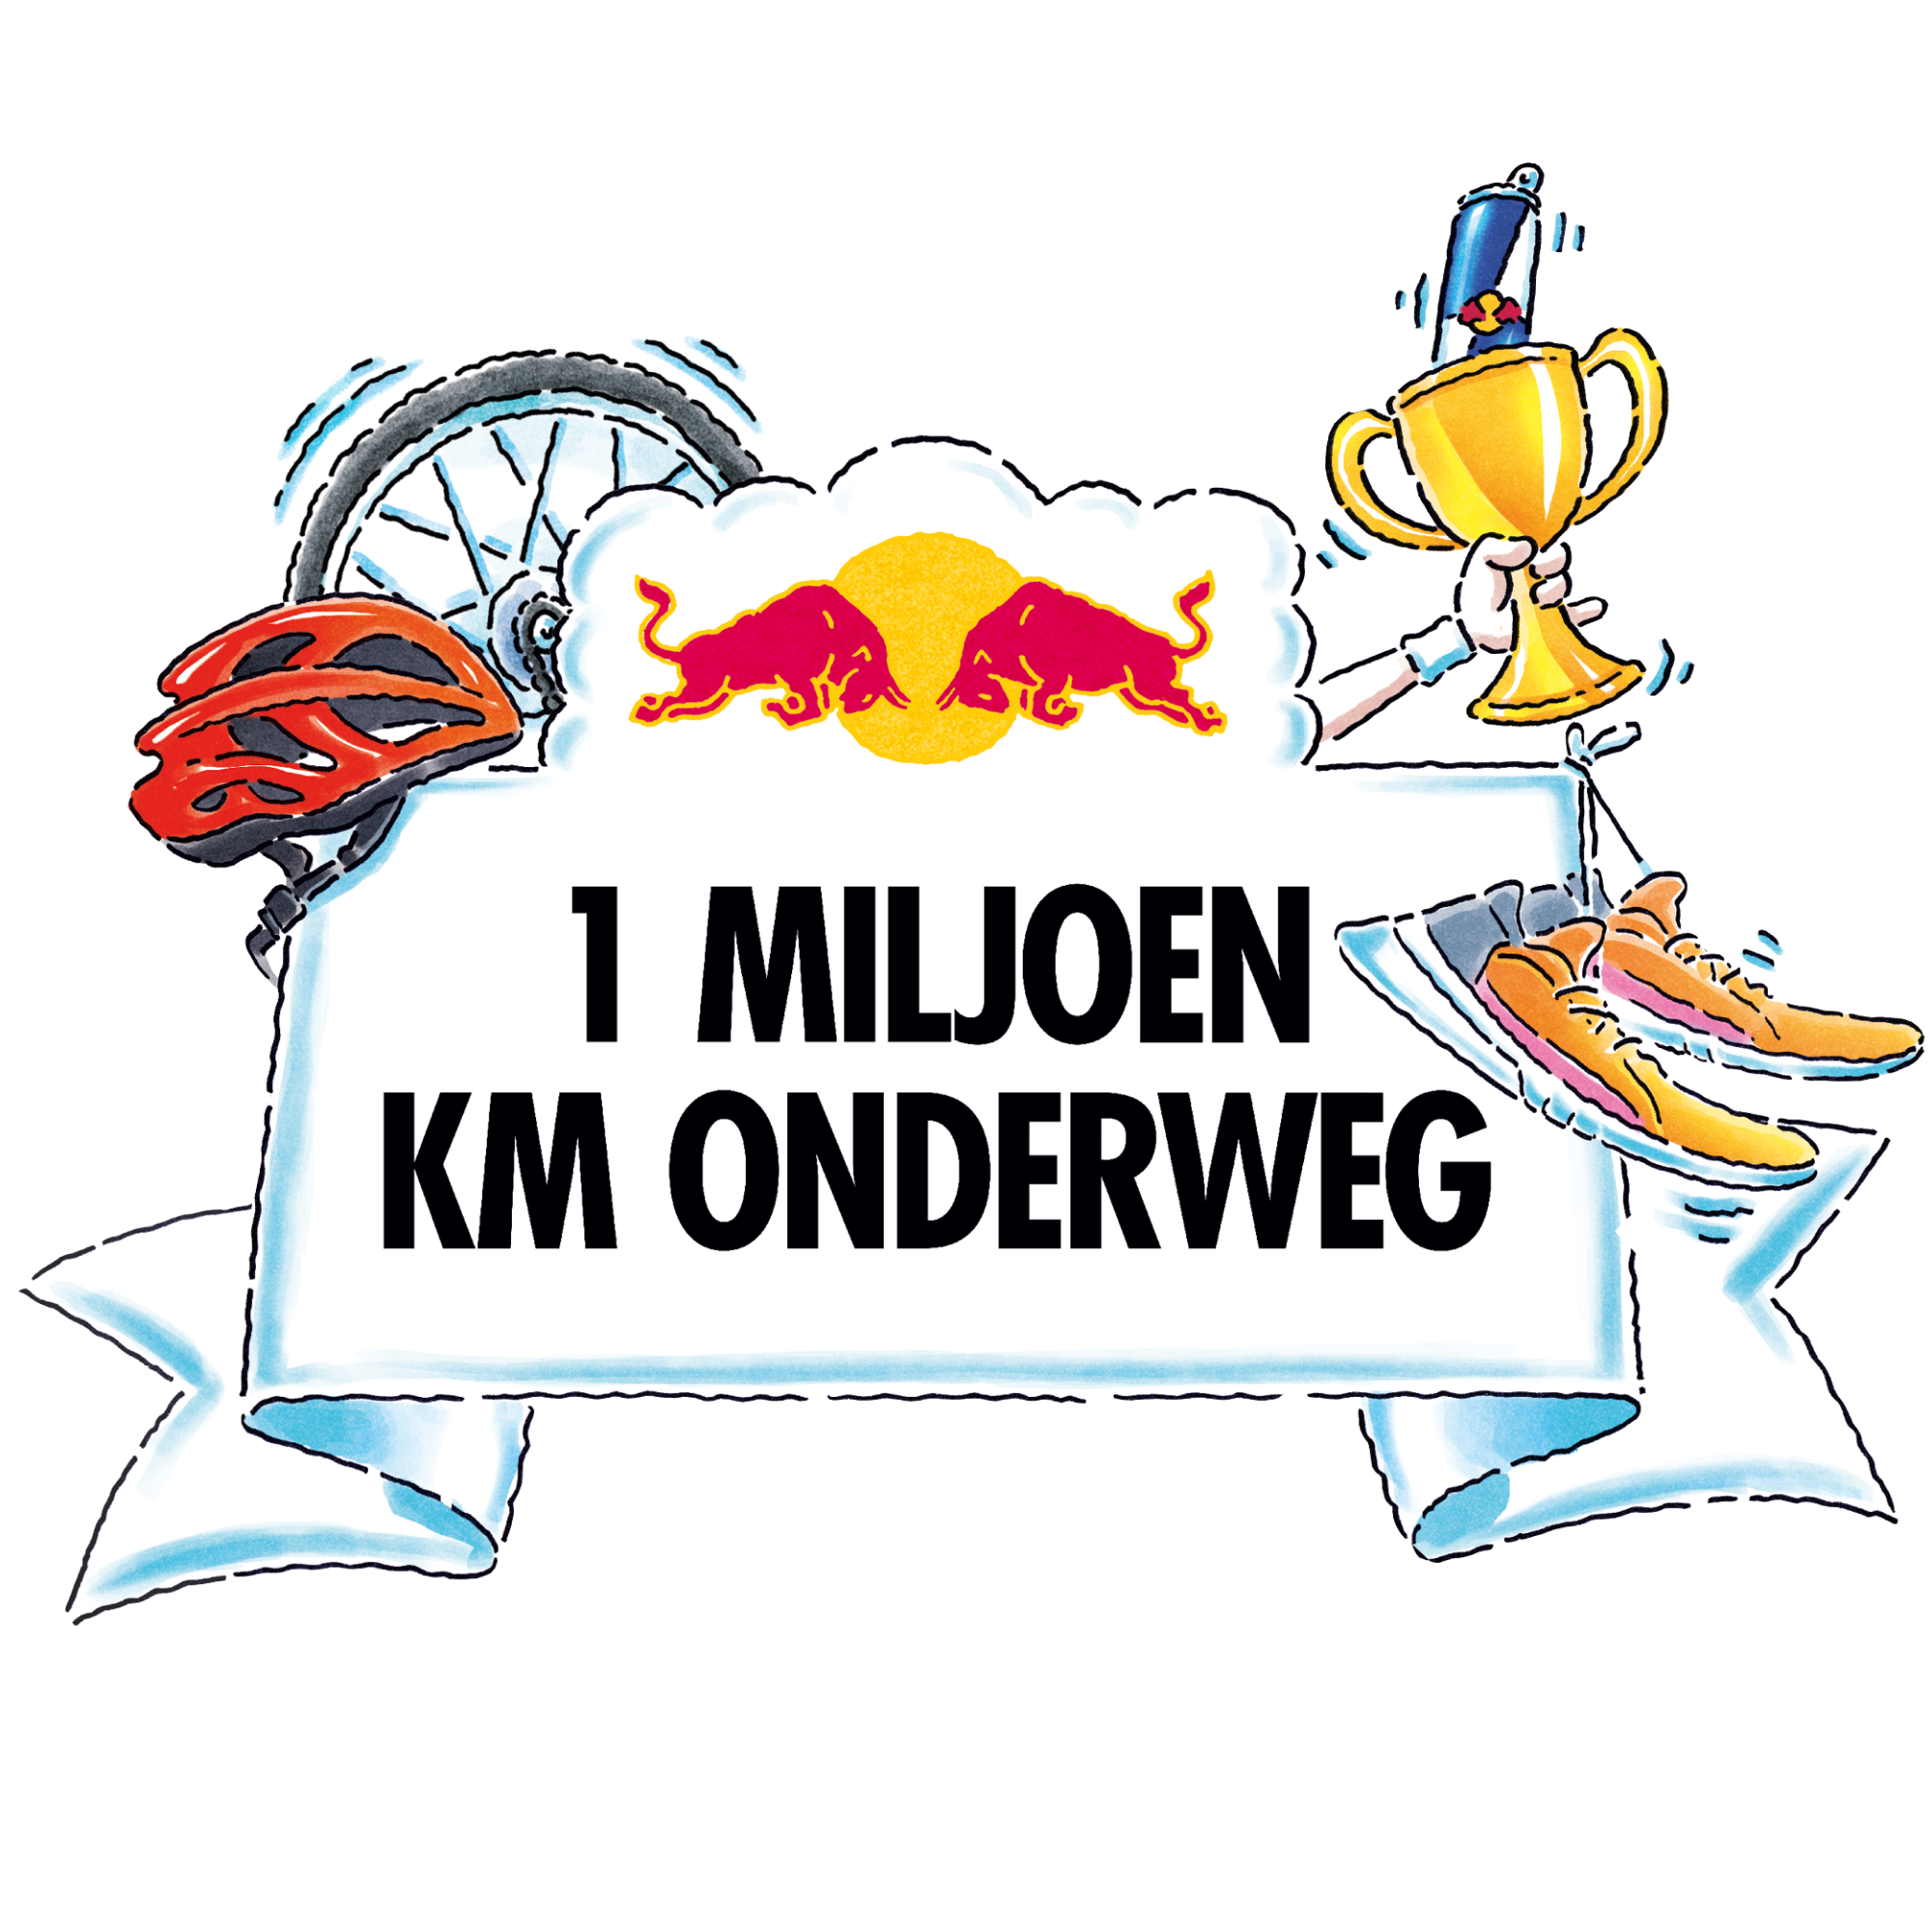 Red Bull 1 million kilometer on route